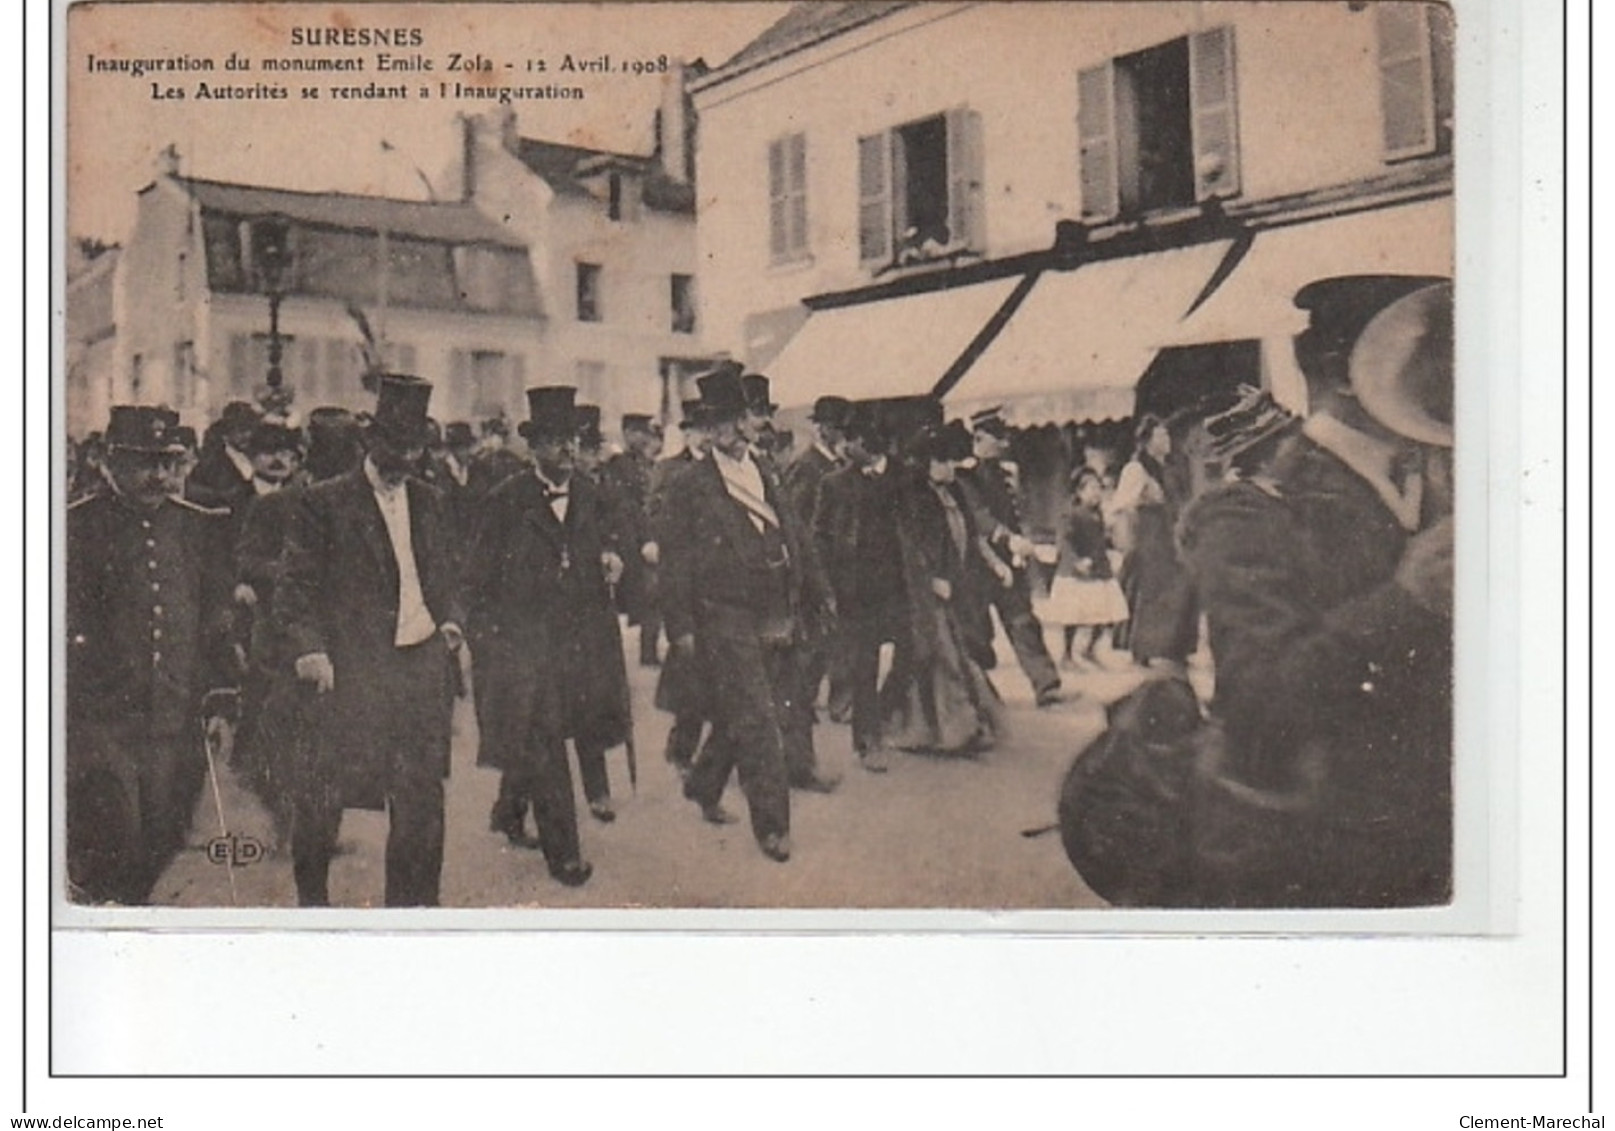 SURESNES - Inauguration Du Monument Emile Zola - 12 Avril 1908 -les Autorités Se Rendant à L'inauguration -très Bon état - Suresnes